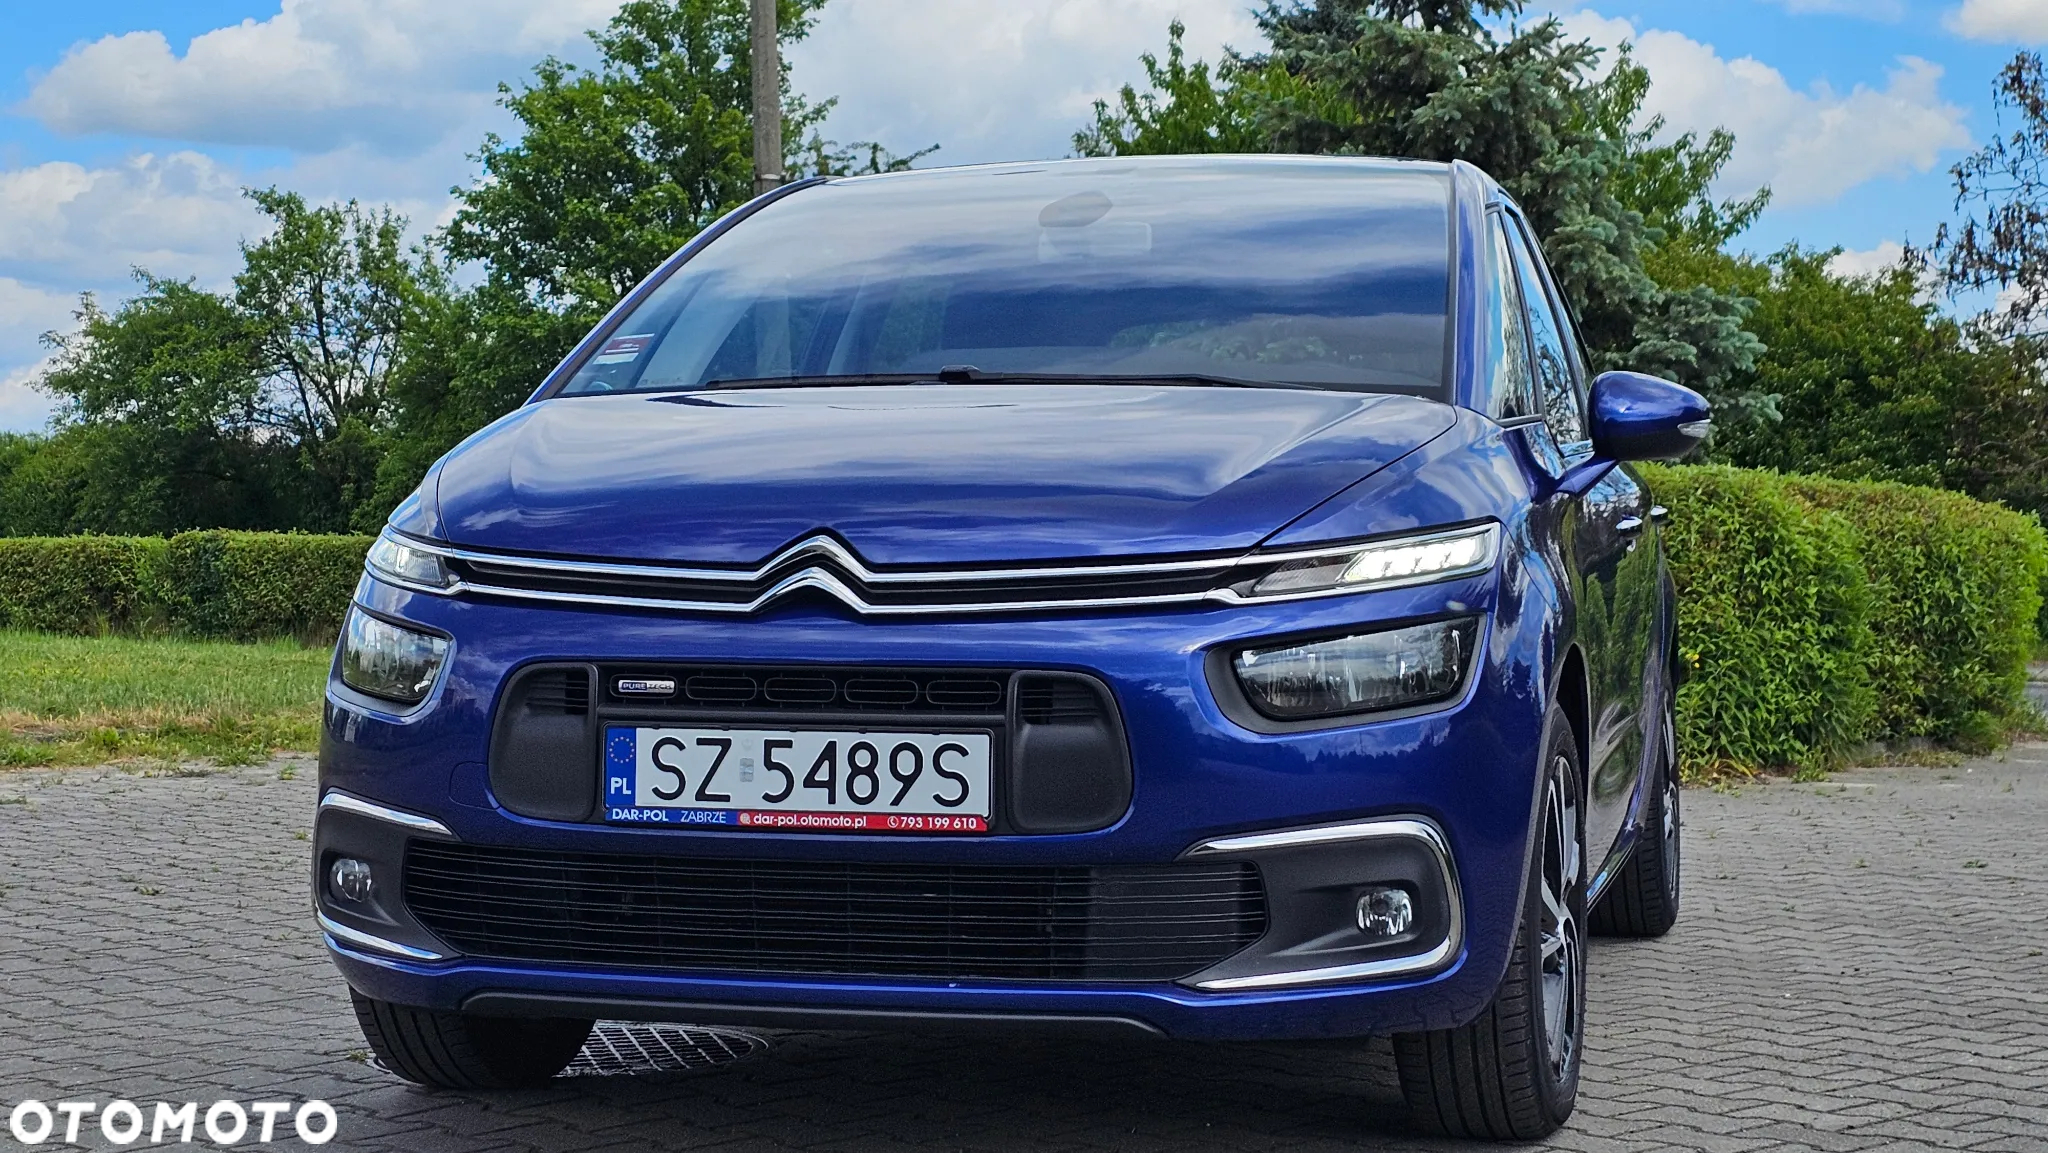 Citroën C4 Picasso - 20